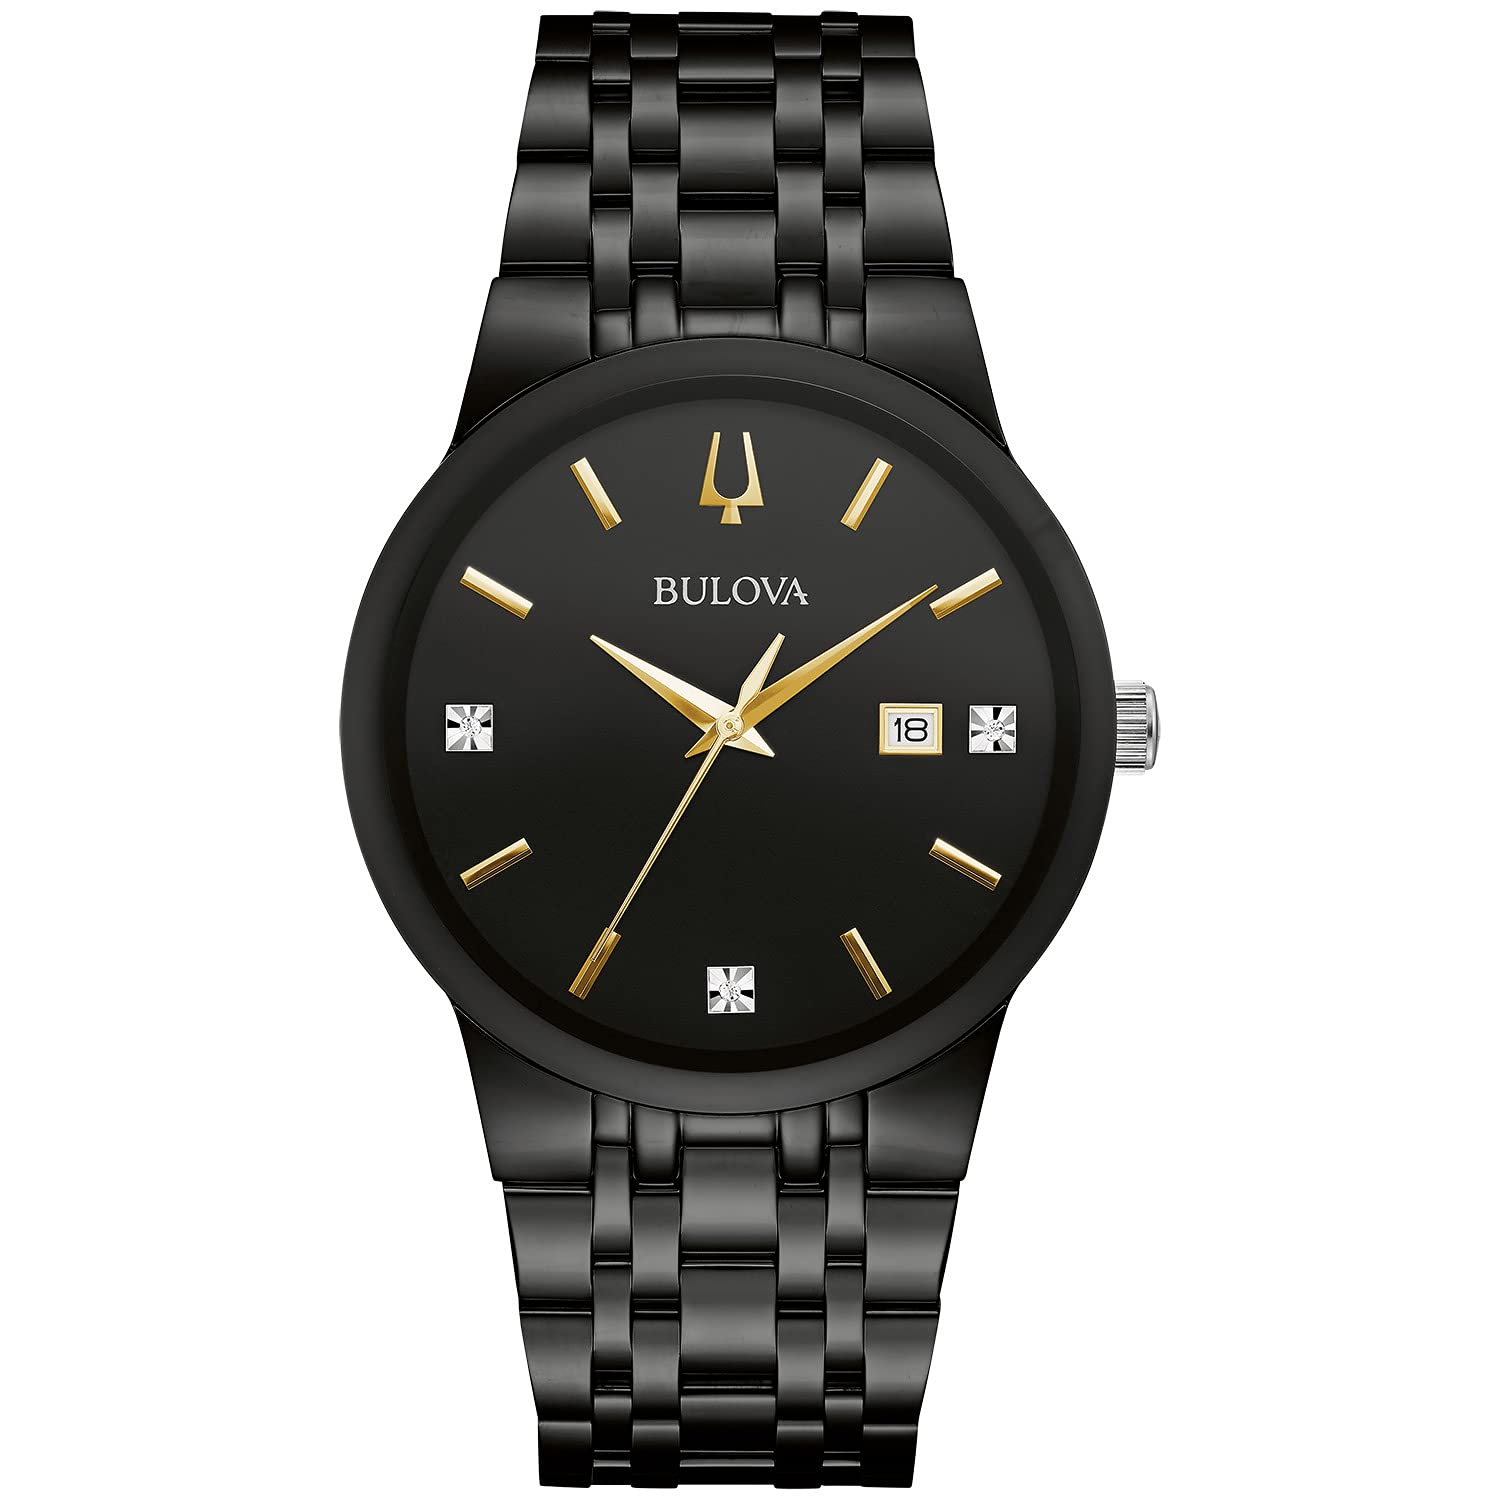 Bulova Men's Modern Gold Tone Stainless Steel 3-Hand Calendar Date Quartz Watch, Diamond Dial